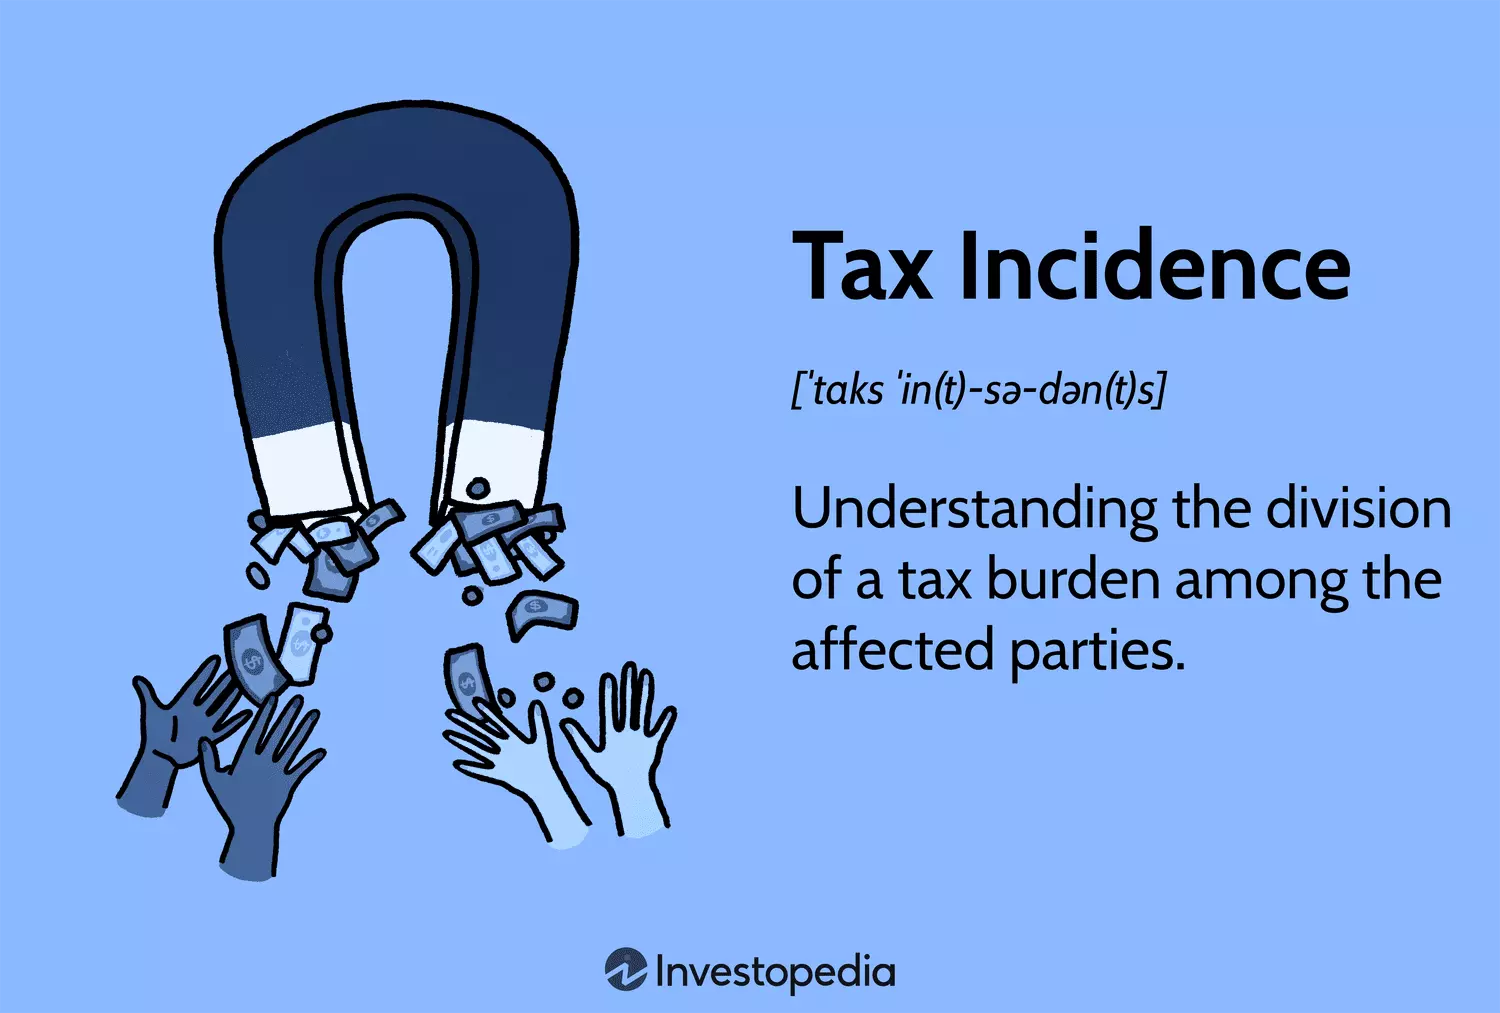 وقوع مالیات Tax Incidence